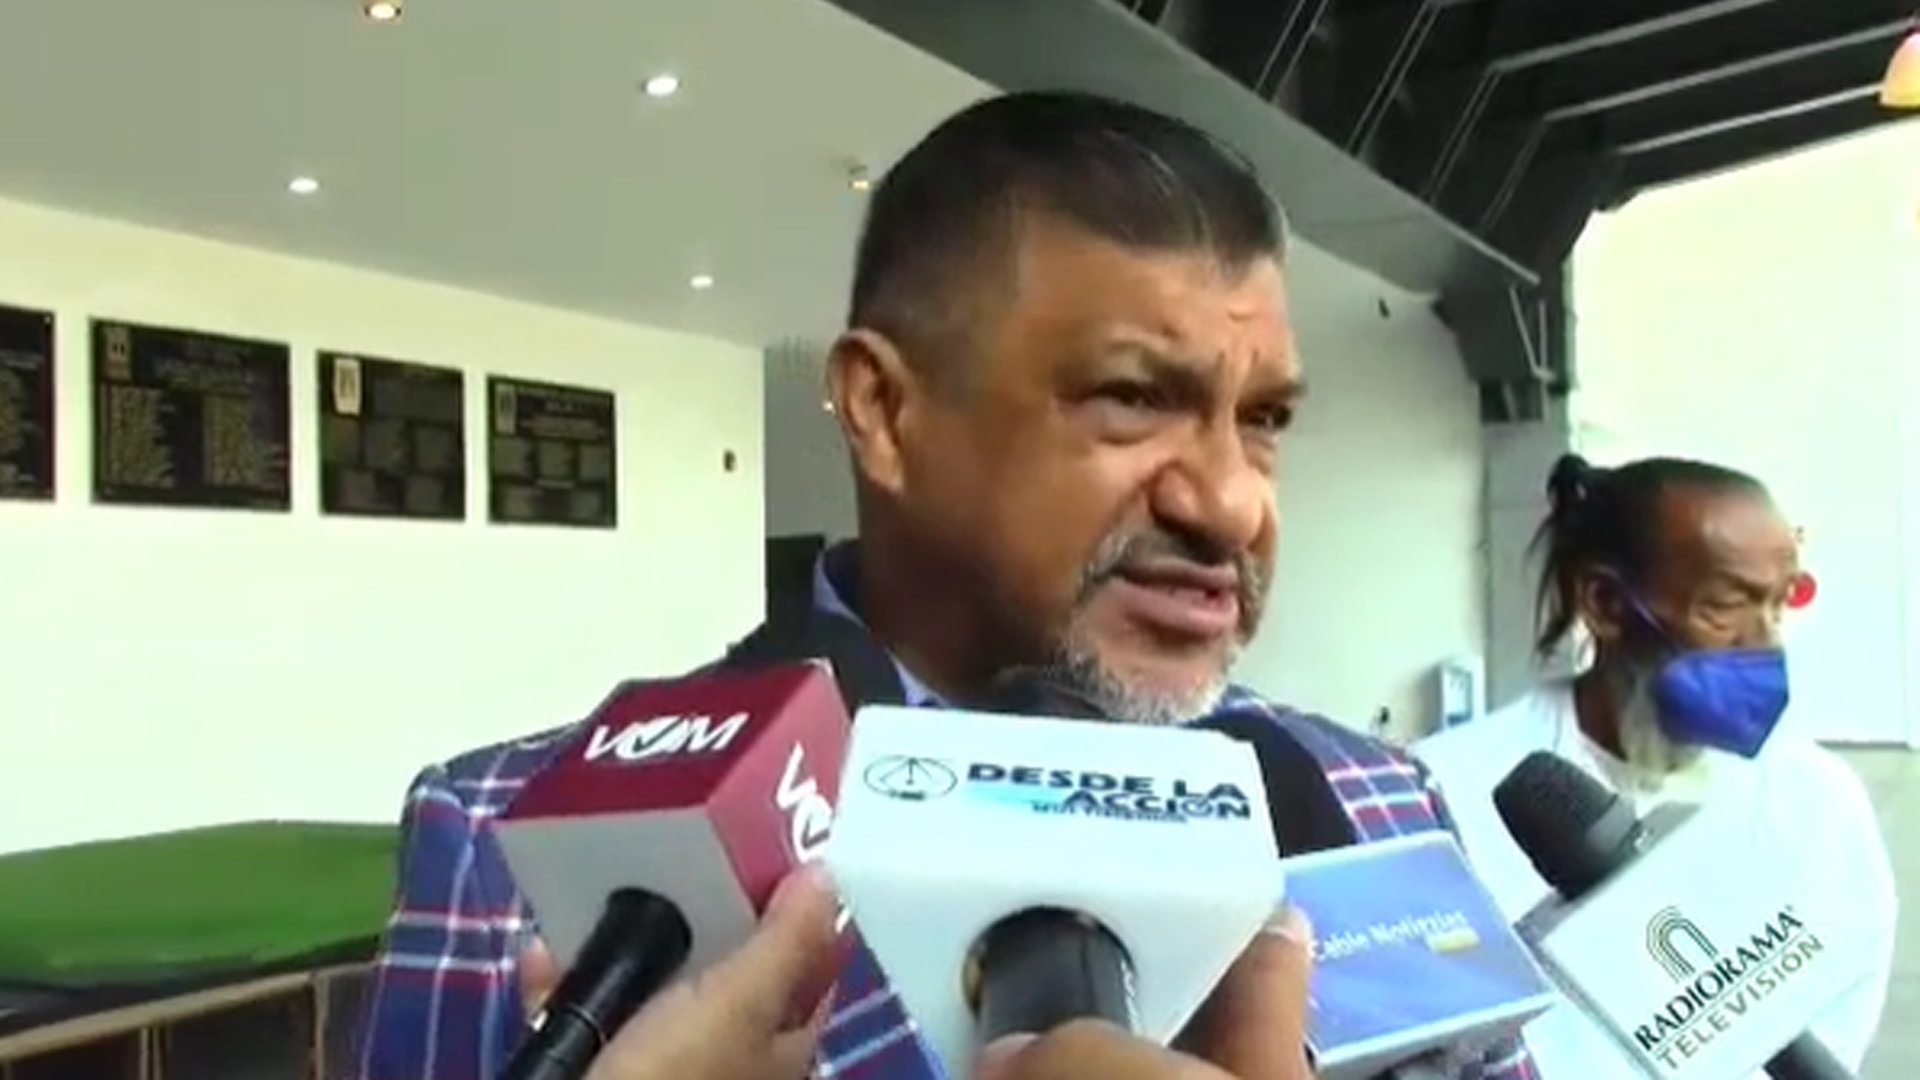 BUSCA CONFEDERACIÓN DE MIGRANTES INTERVENCIÓN DE PAPA EN INDULTOS A MEXICANOS